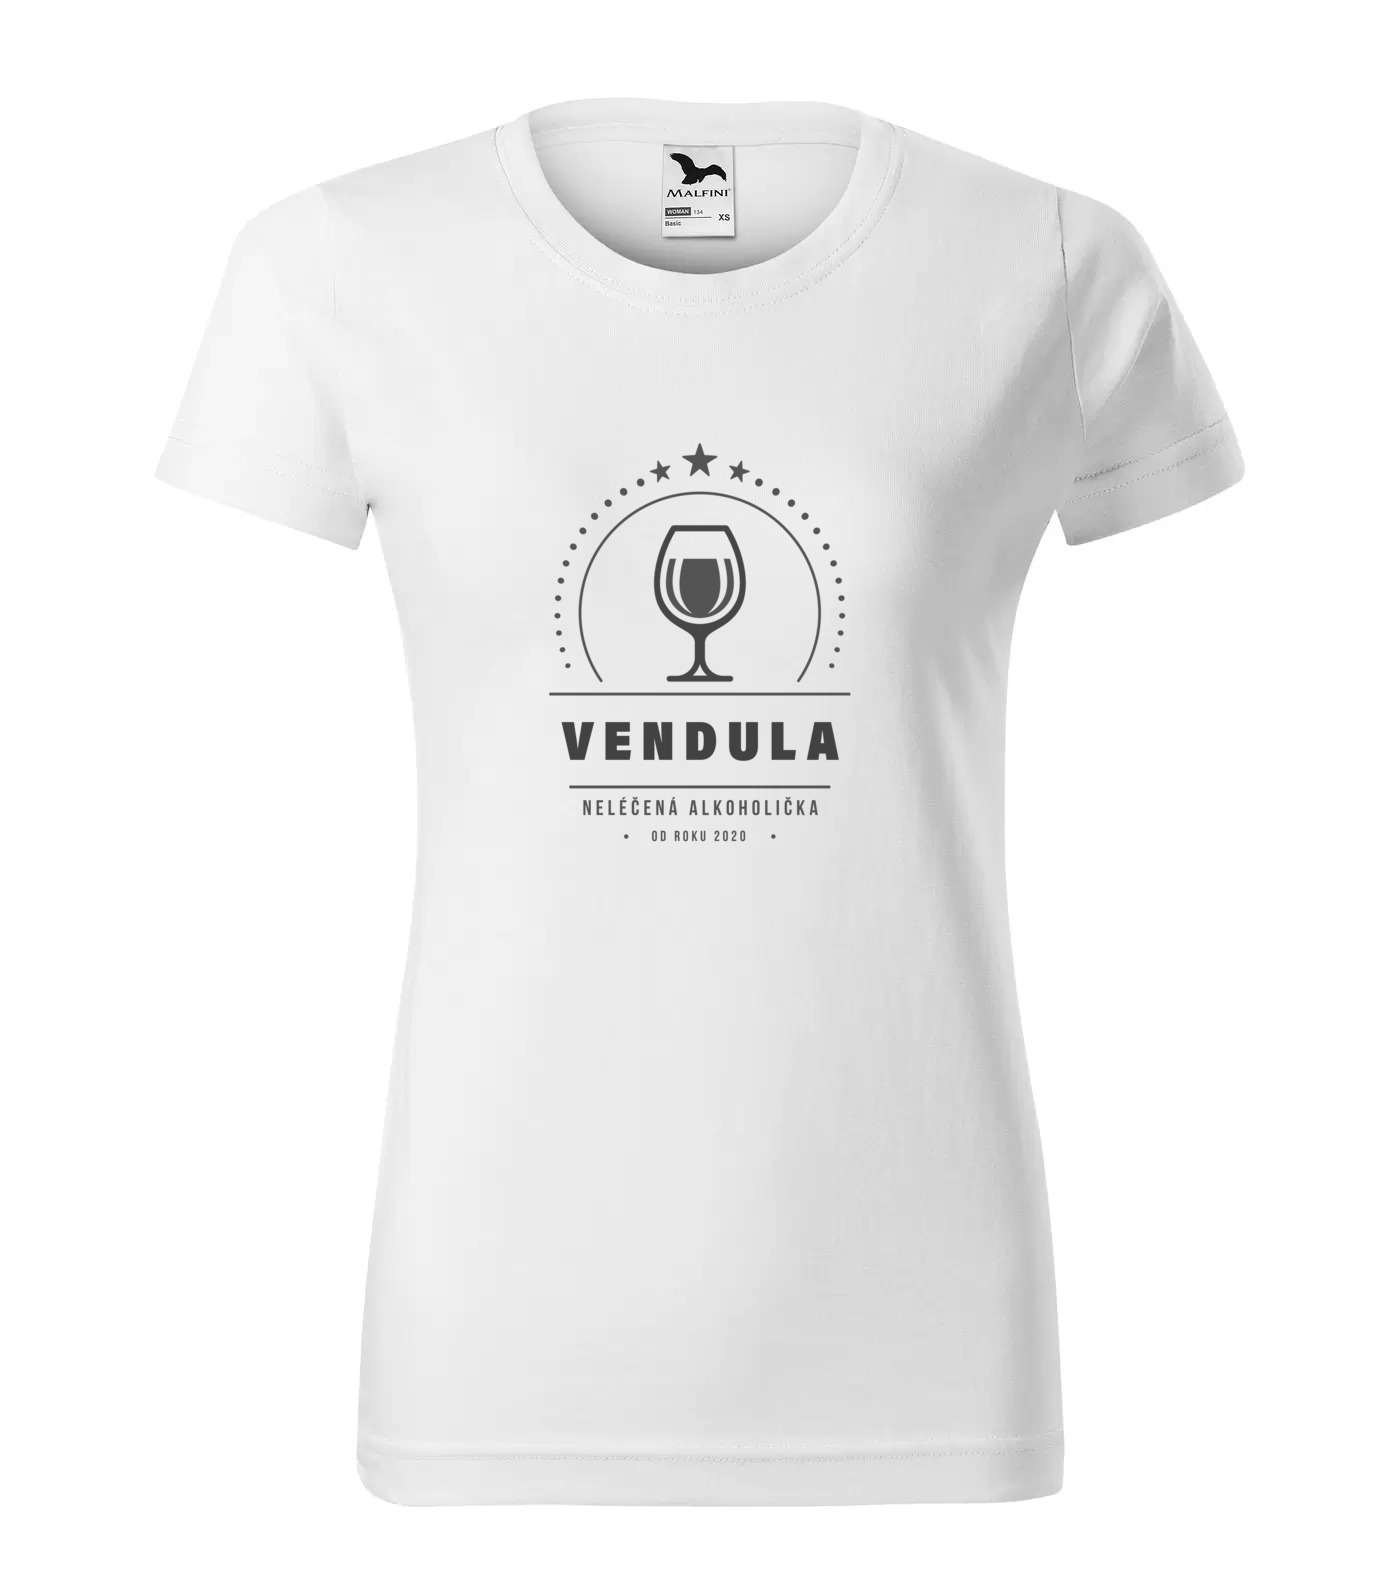 Tričko Alkoholička Vendula